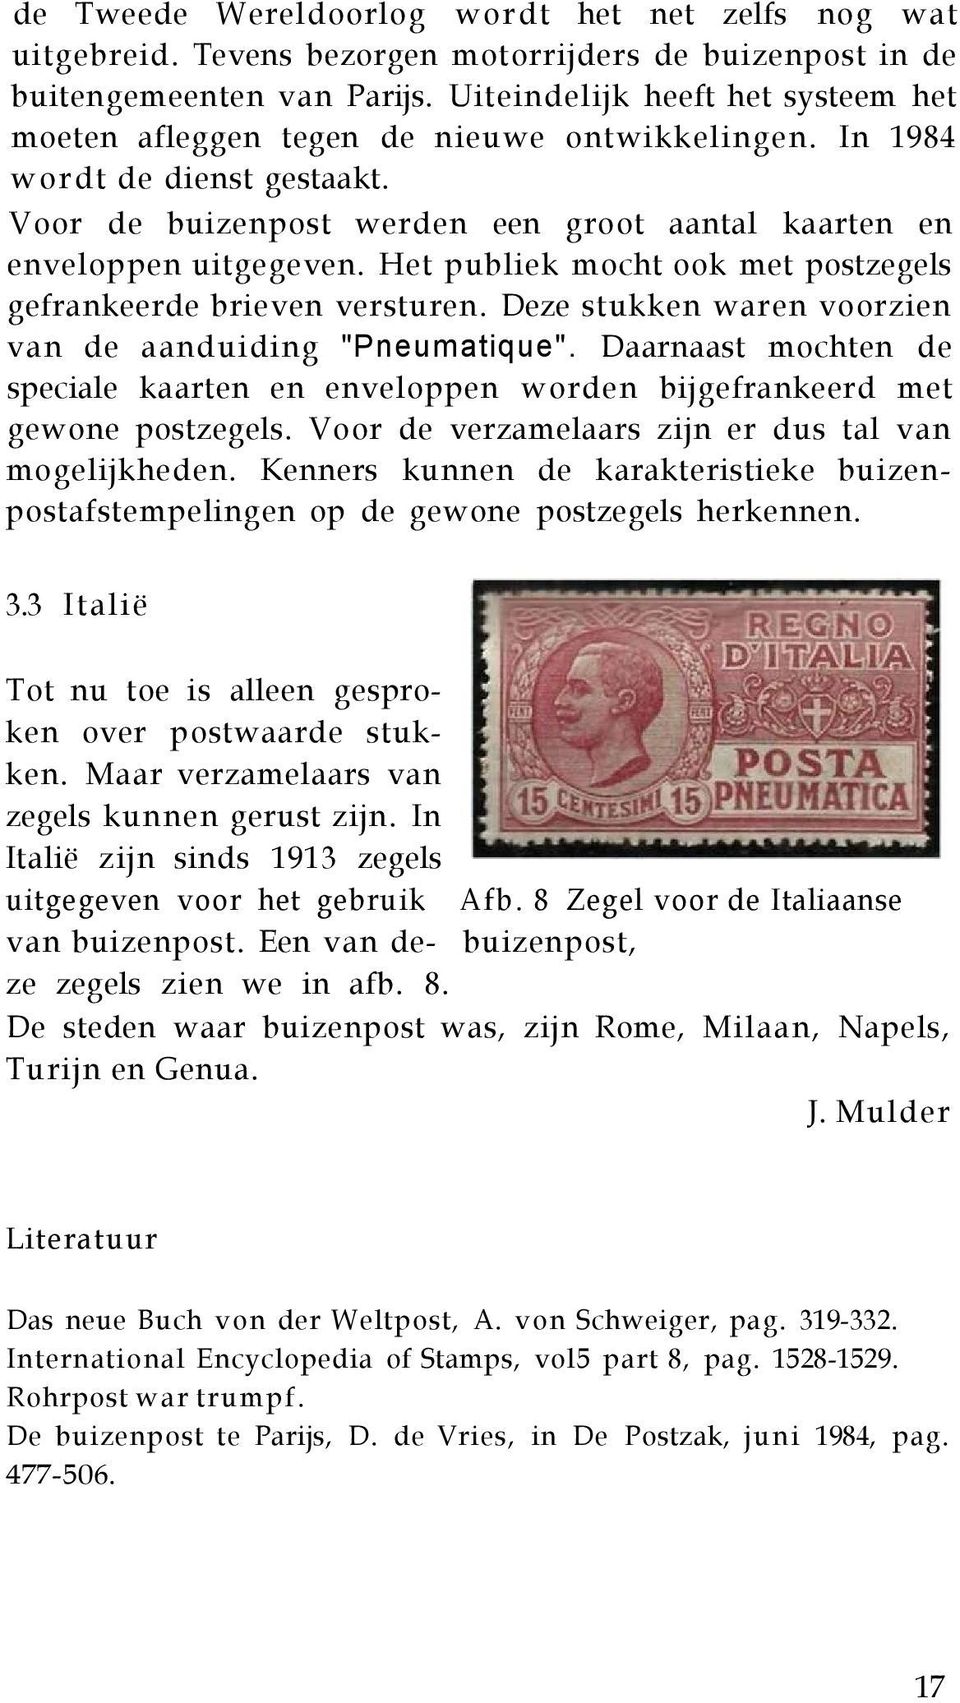 Het publiek mocht ook met postzegels gefrankeerde brieven versturen. Deze stukken waren voorzien van de aanduiding "Pneumatique".